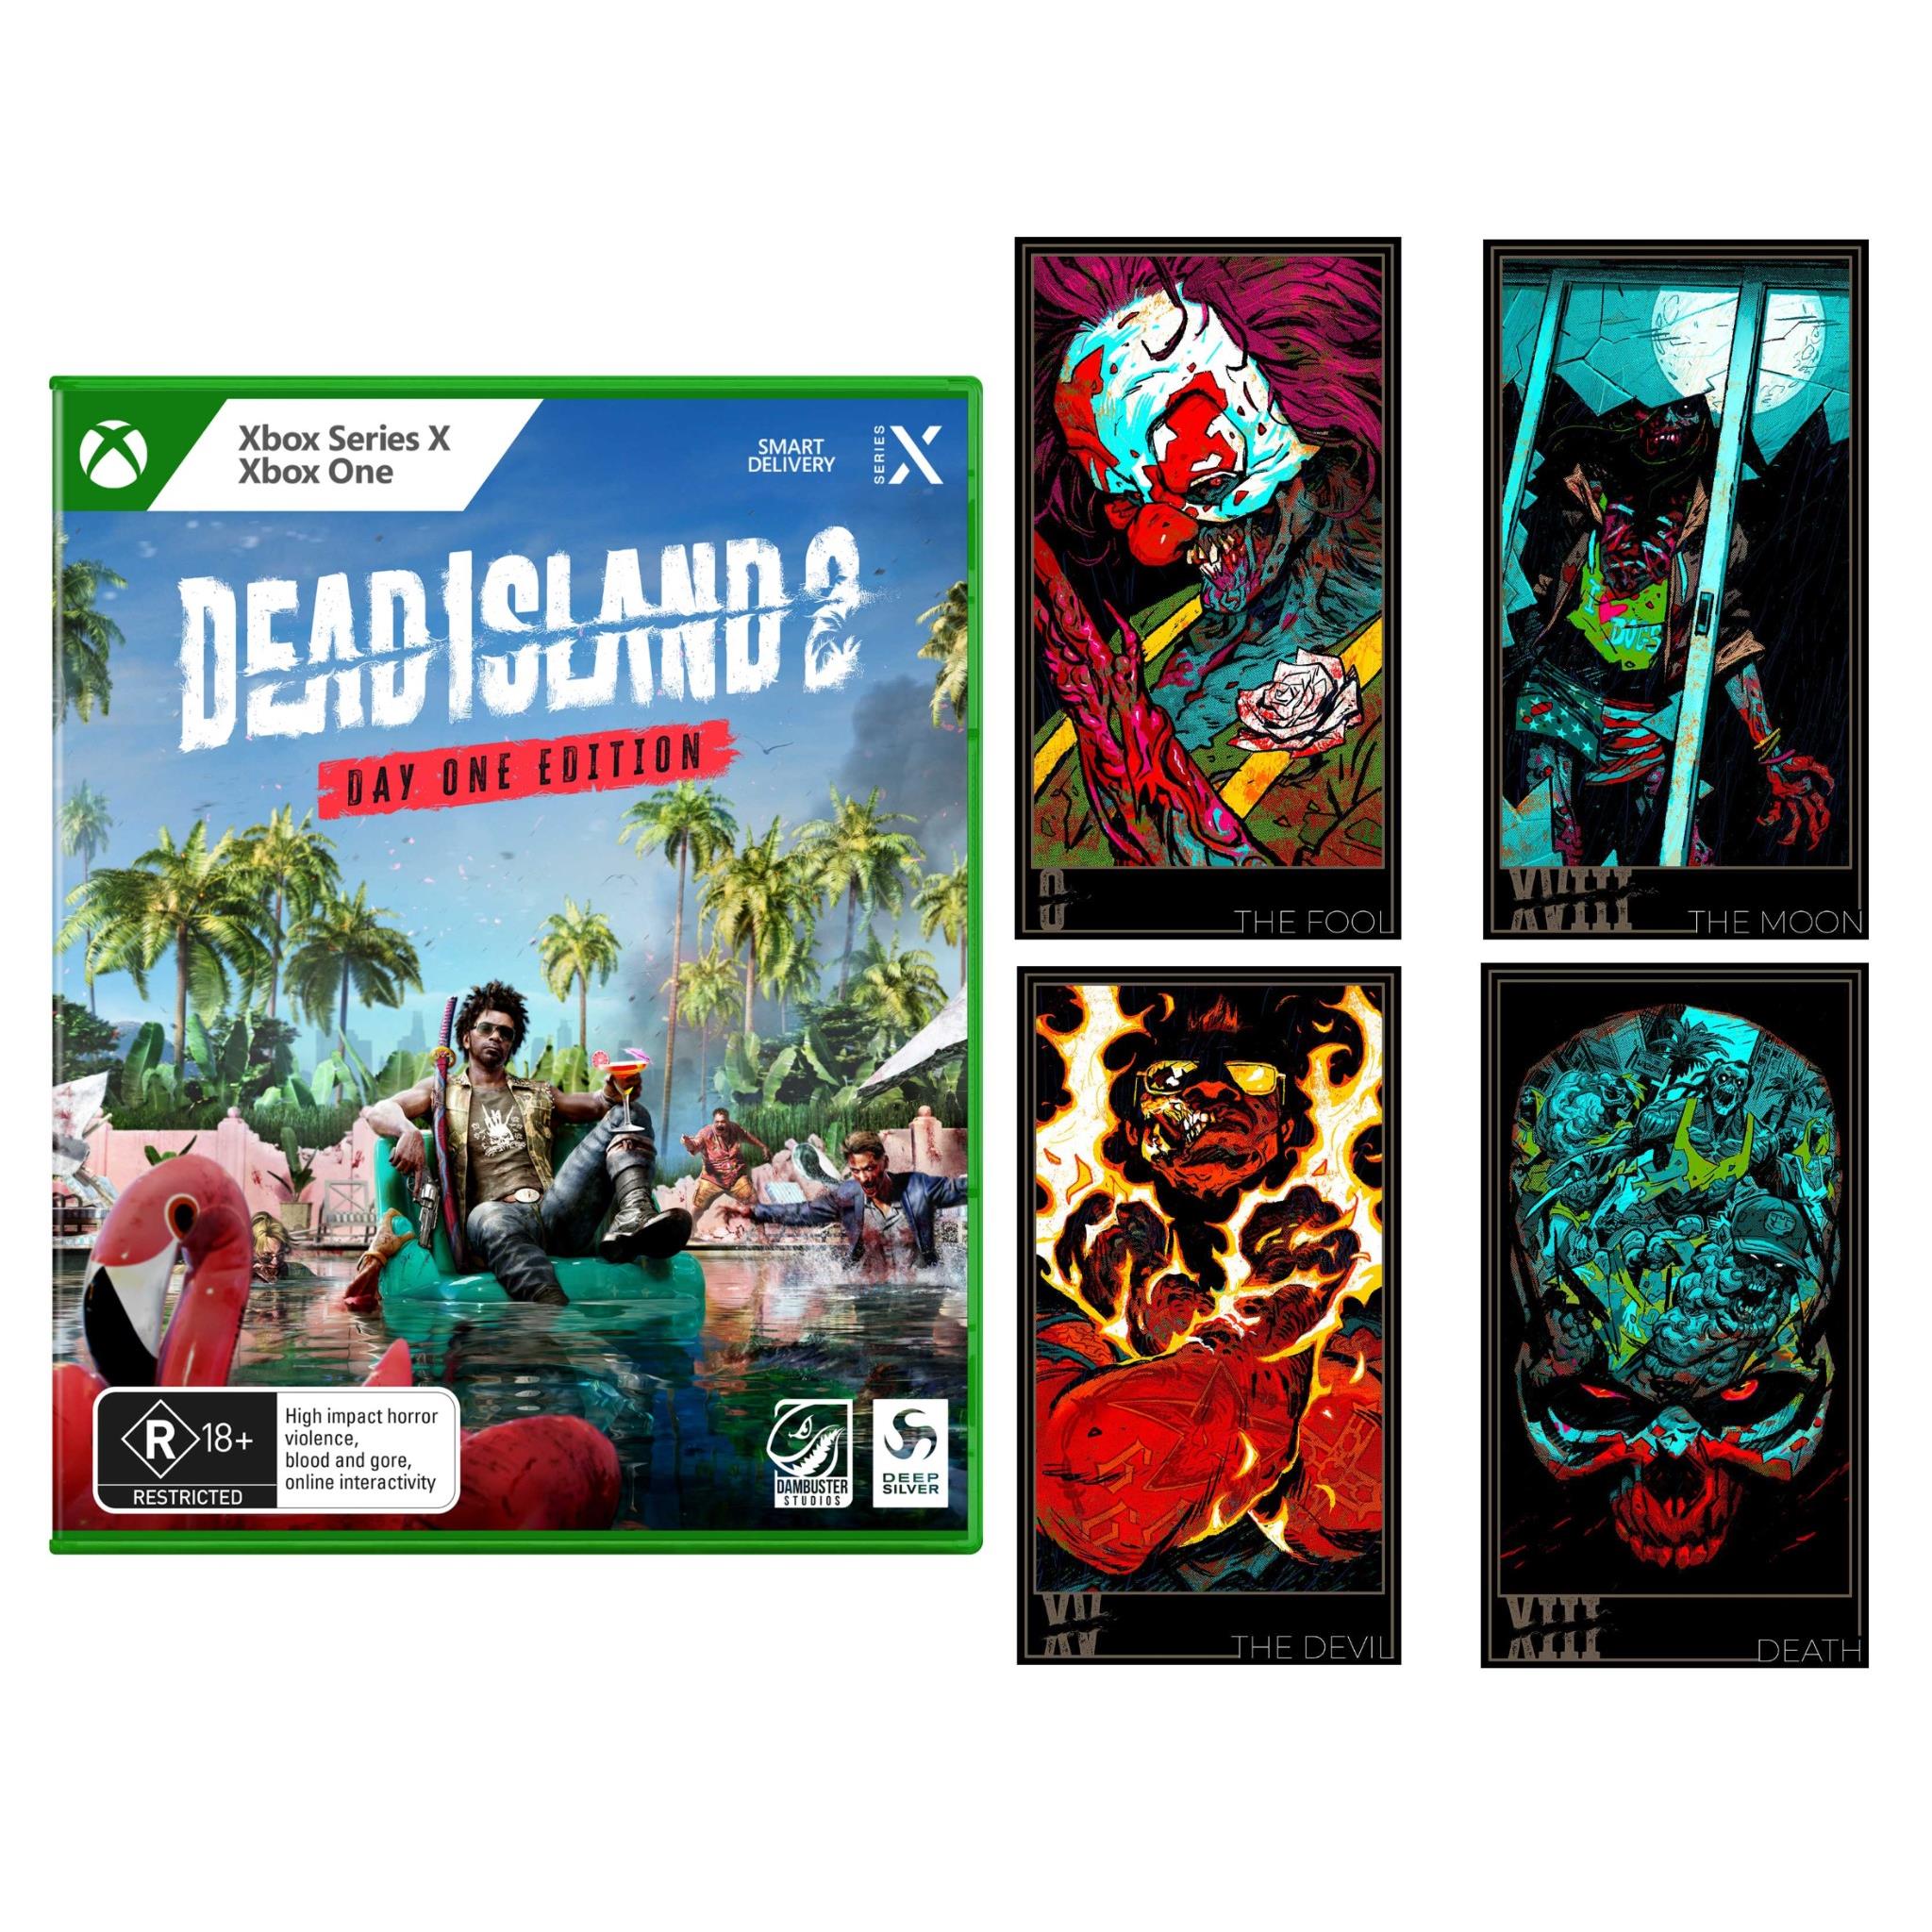 Dead Island 2 special edition, pre-order bonus detailed